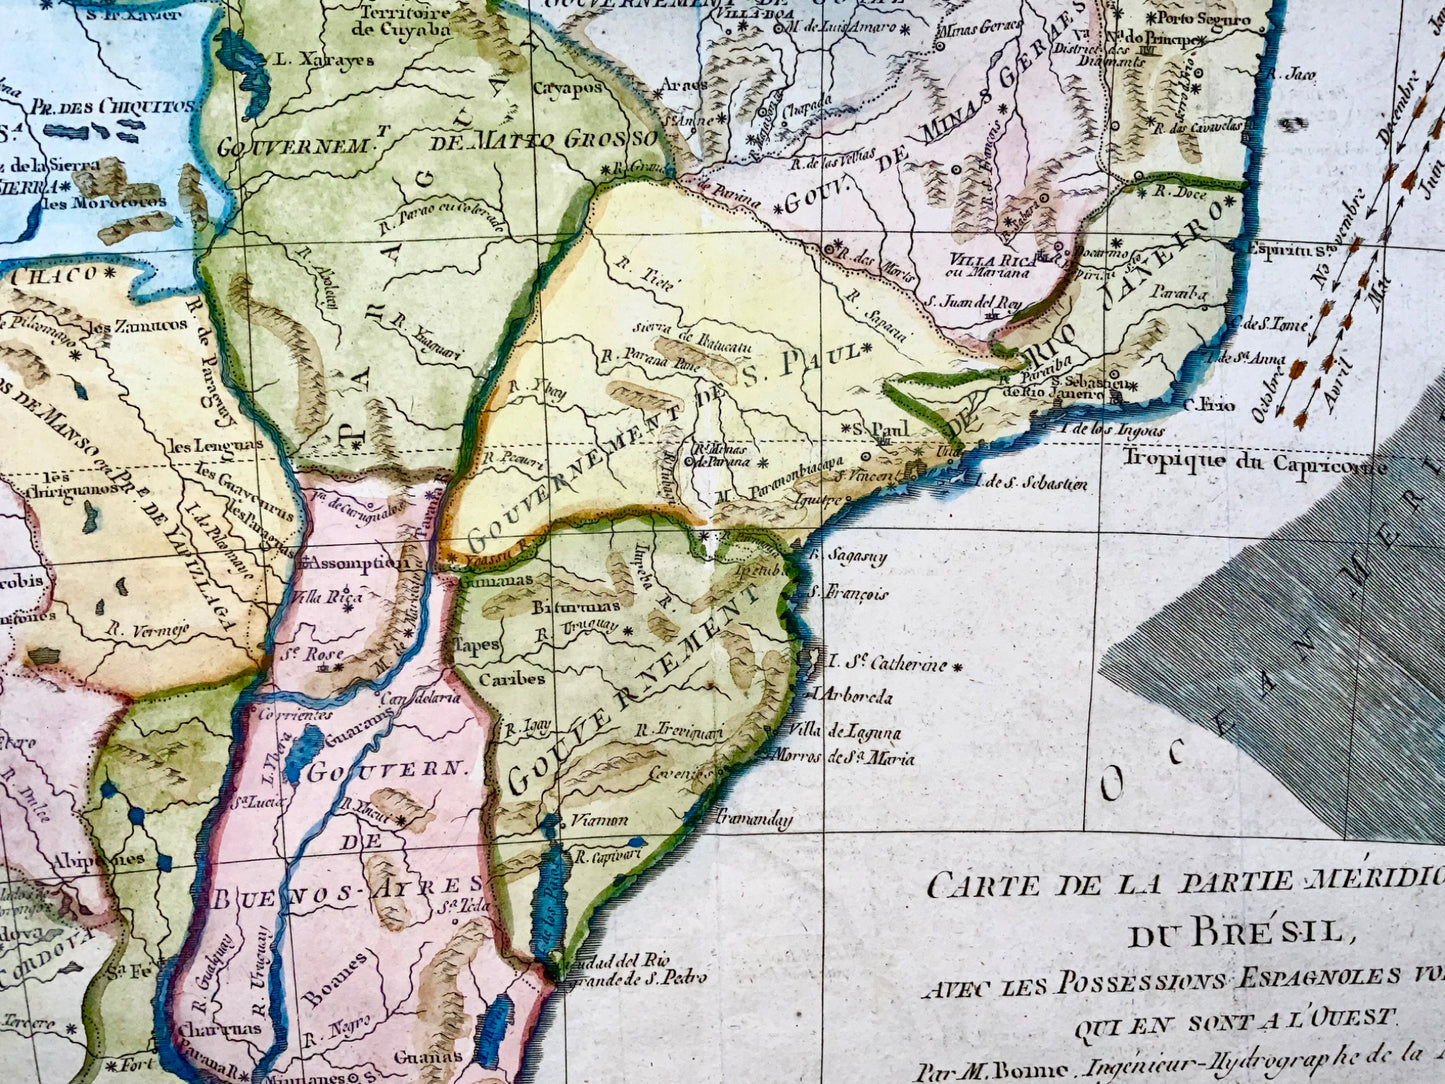 1780 Brésil, Brésil, possessions espagnoles, Bonne, carte gravée colorée à la main